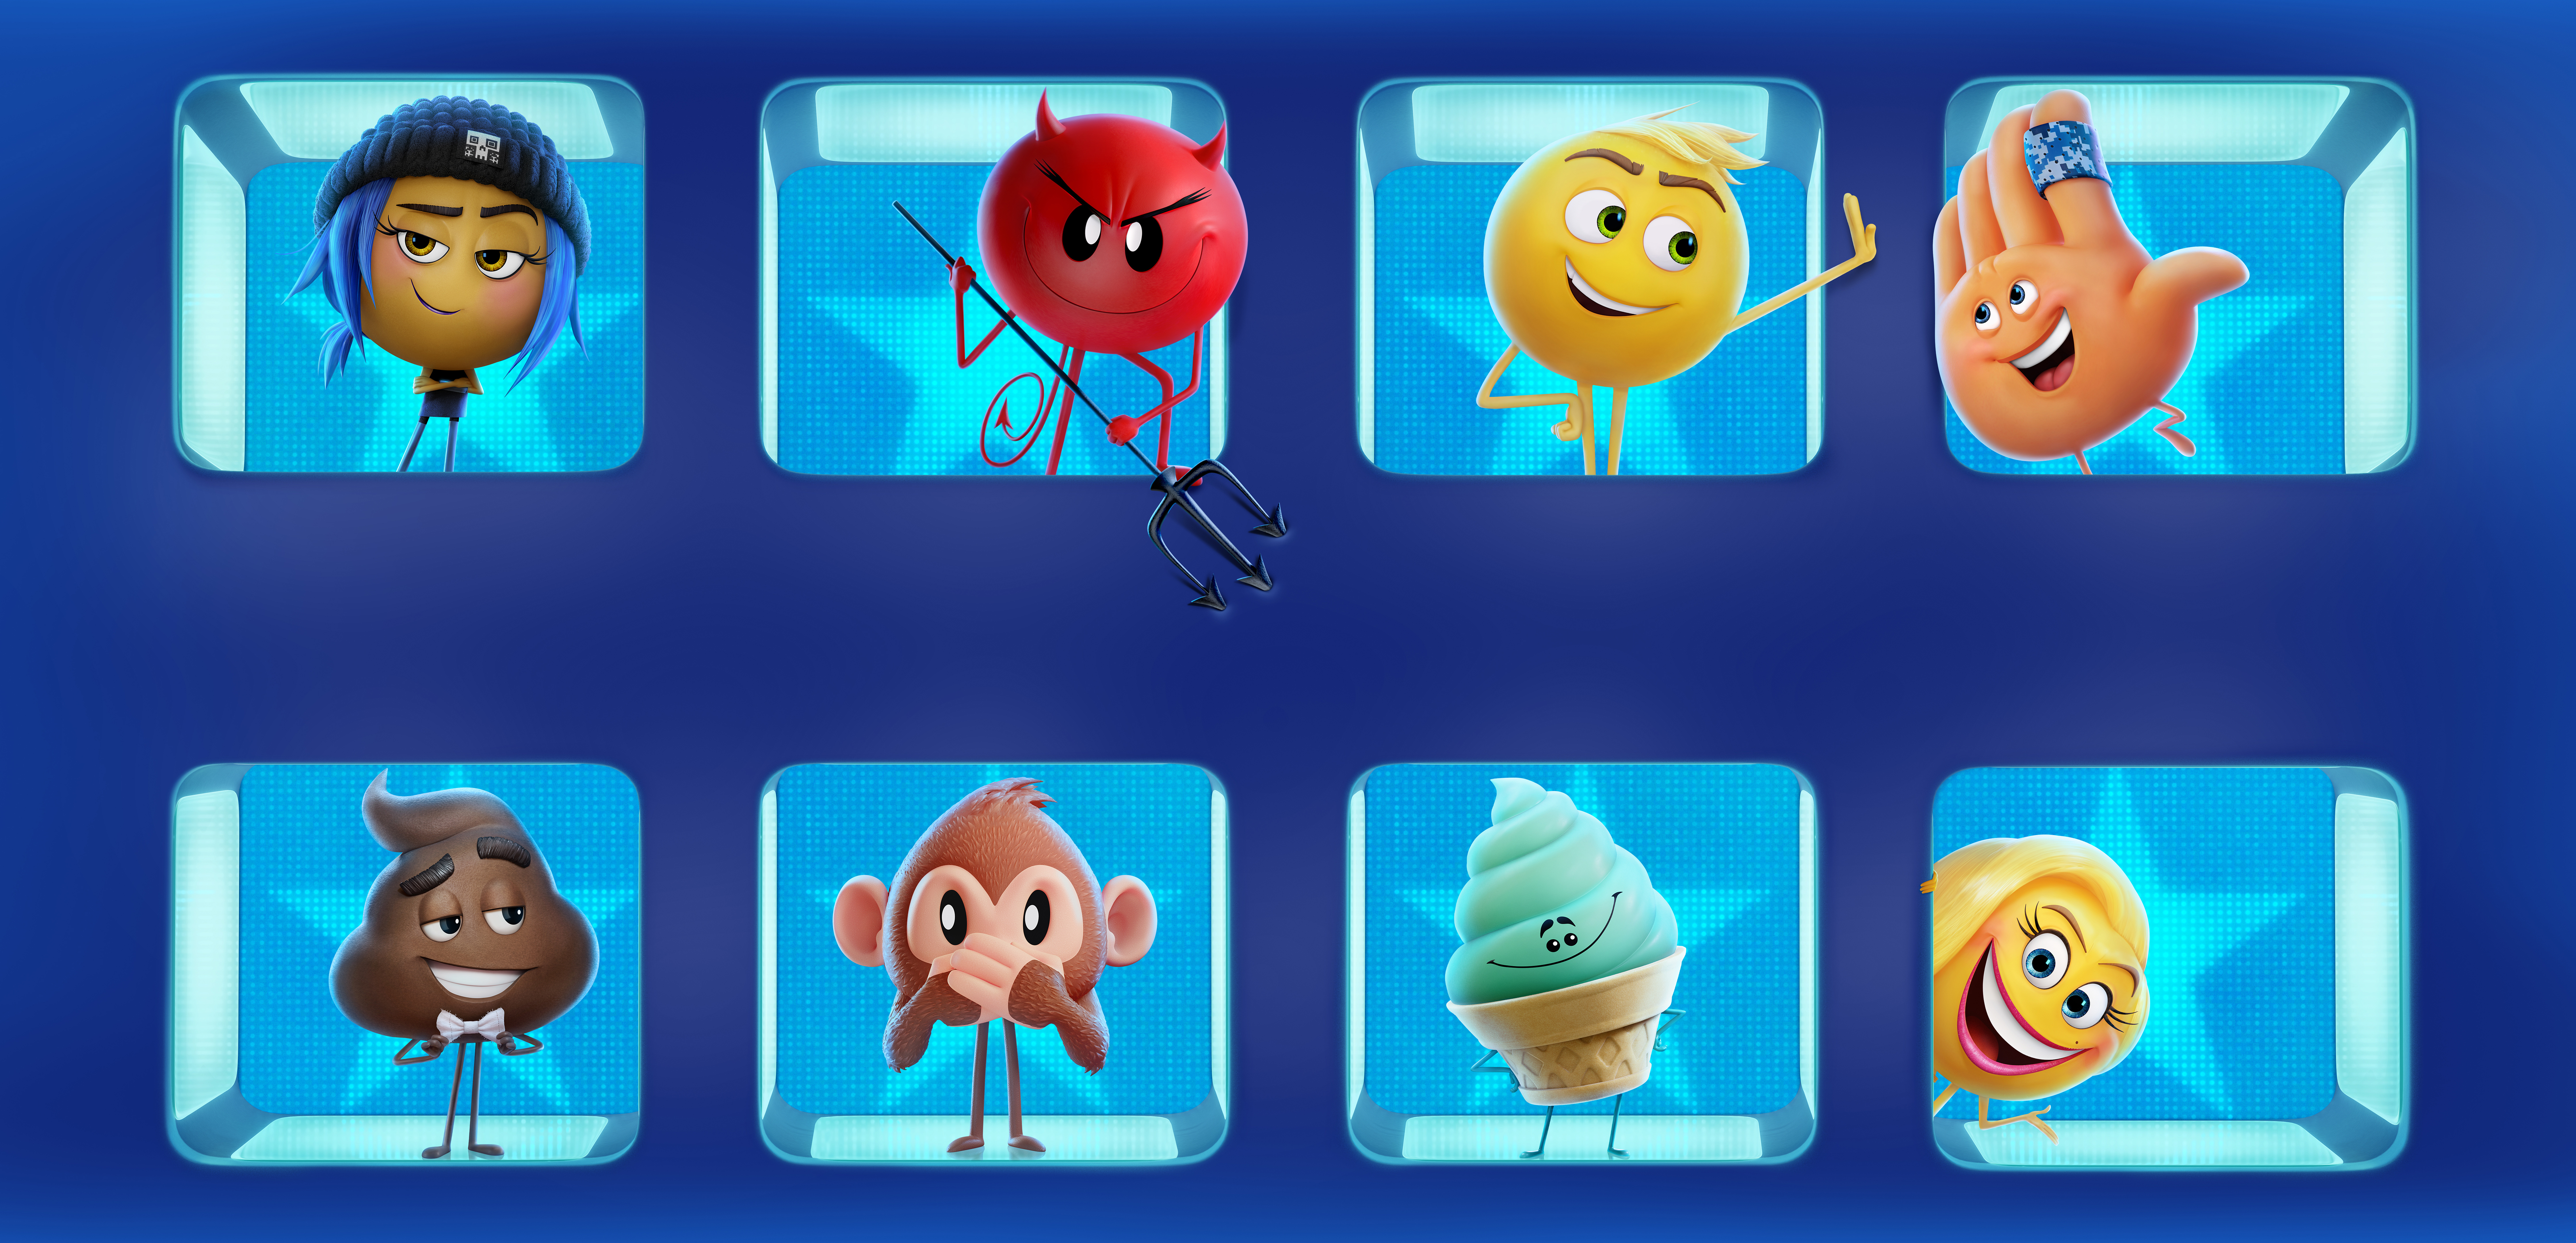 Movie The Emoji Movie HD Wallpaper | Background Image